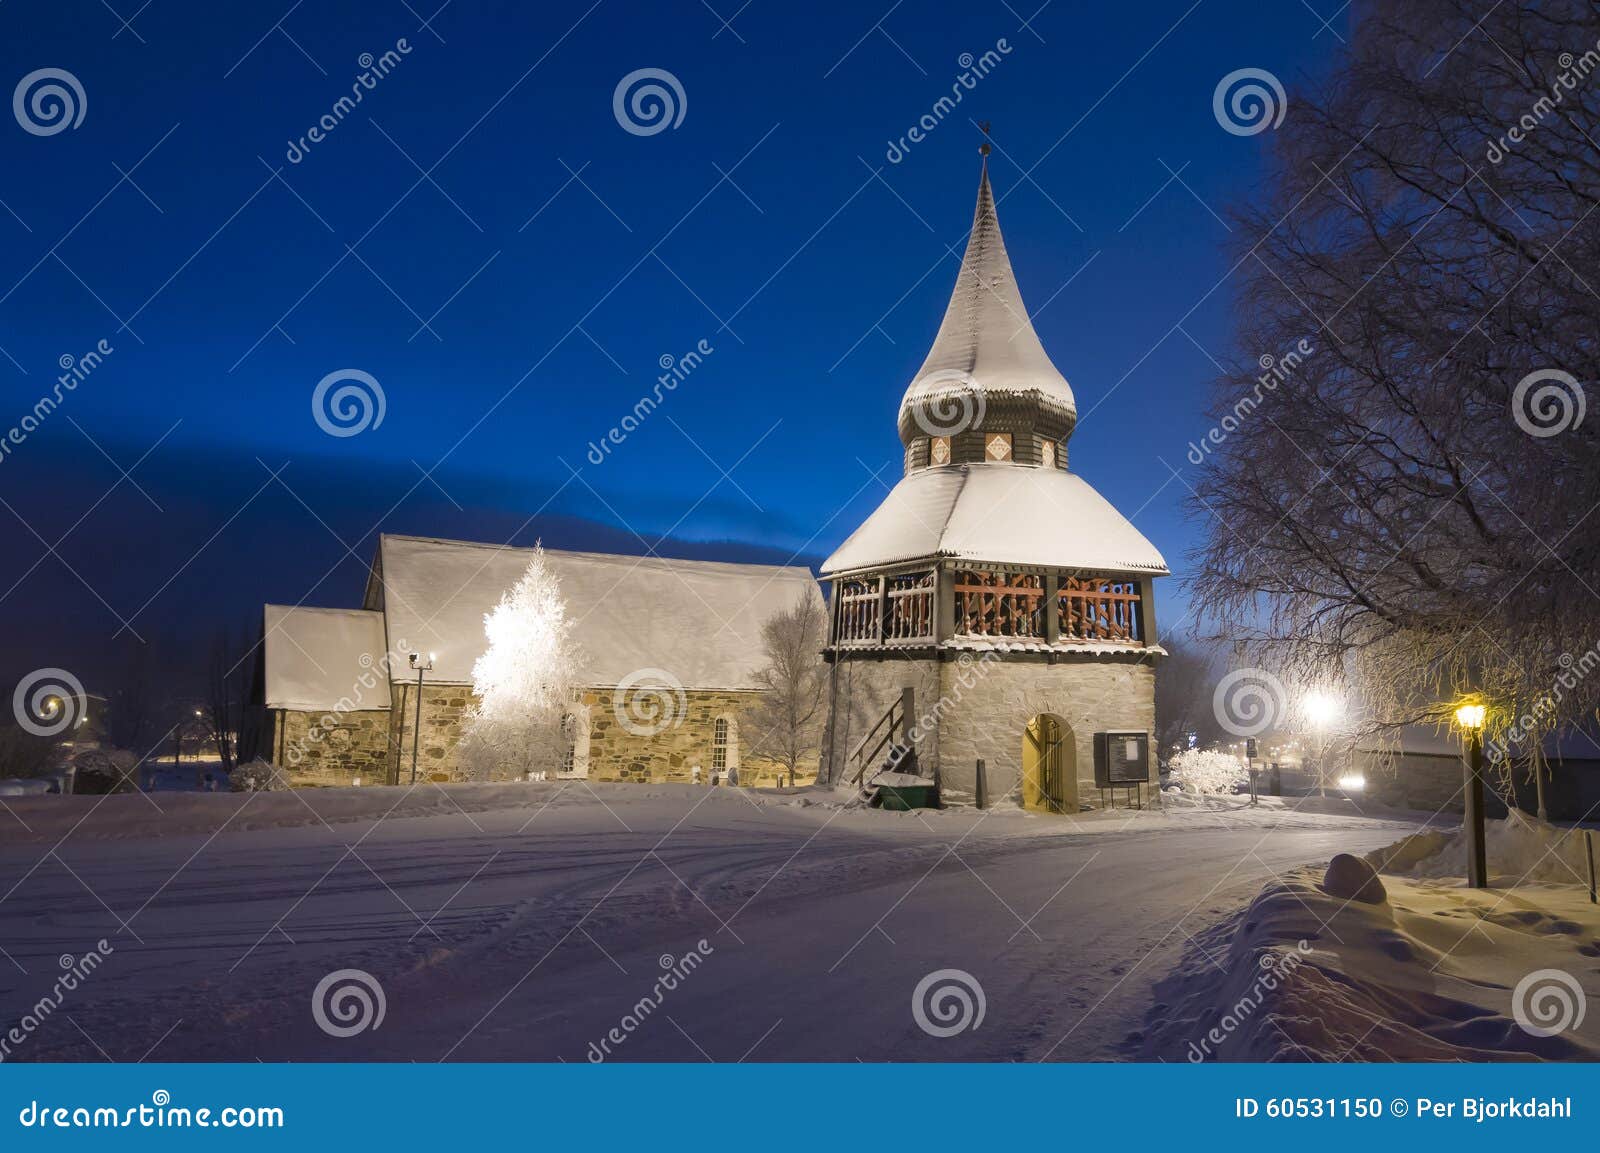 Ãâ¦re medieval church and belltower wintertime evening